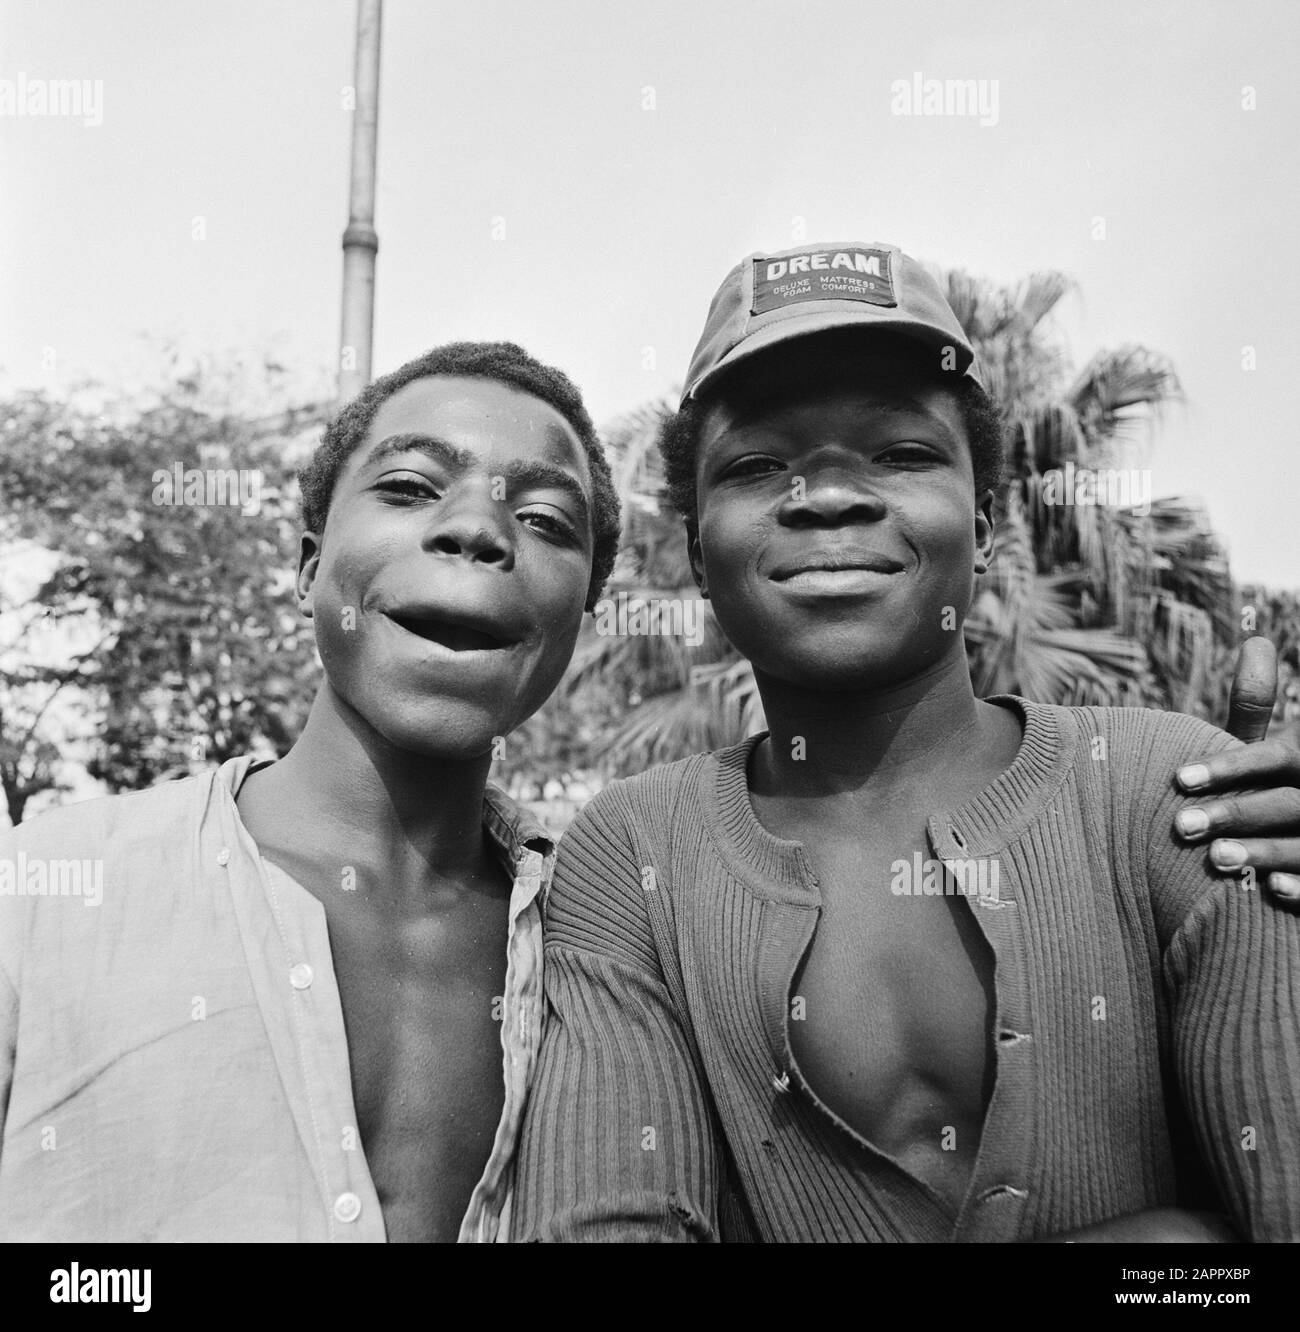 Zaire (ehemals Belgischer Kongo)-Statue; kongolesische Jungen Datum: 24. Oktober 1973 Ort: Kongo, Kinshasa, Zaire Schlüsselwörter: Kongolesen, Kinder, Porträts Stockfoto